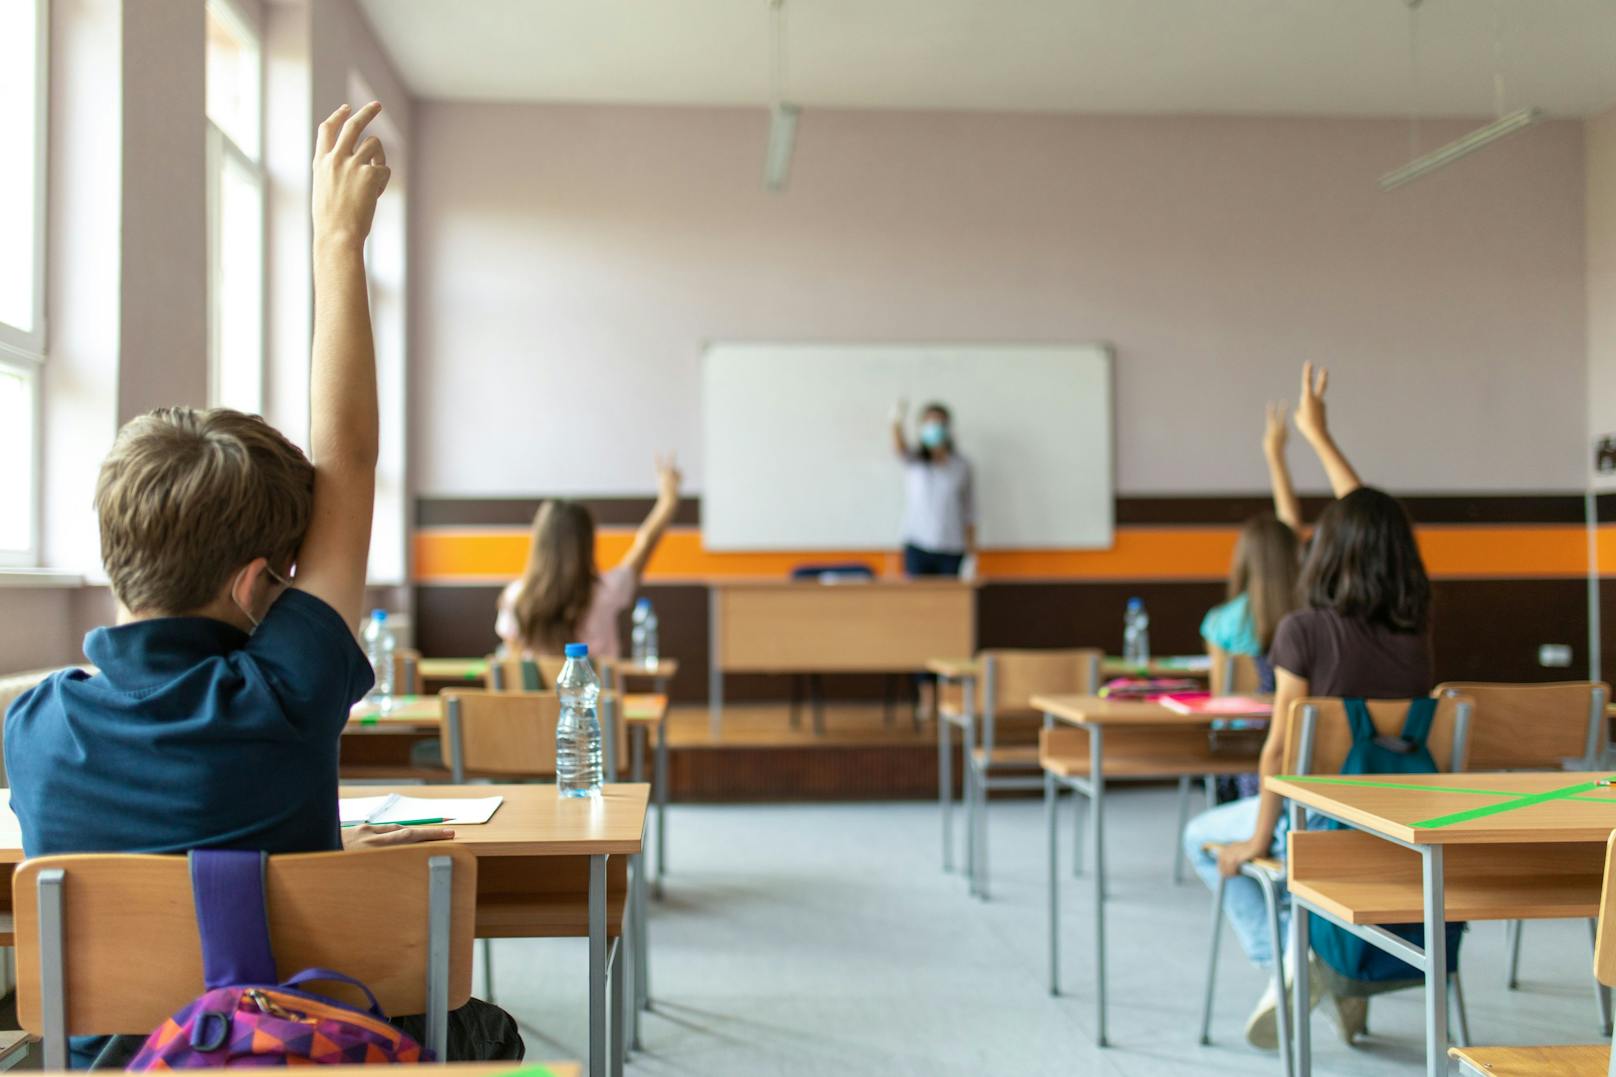 Der Personalmangel an Wiener Schulen spitzt sich zu: Laut Bildungsdirektion fehlen aktuell 15 klassenführende Lehrkräfte.